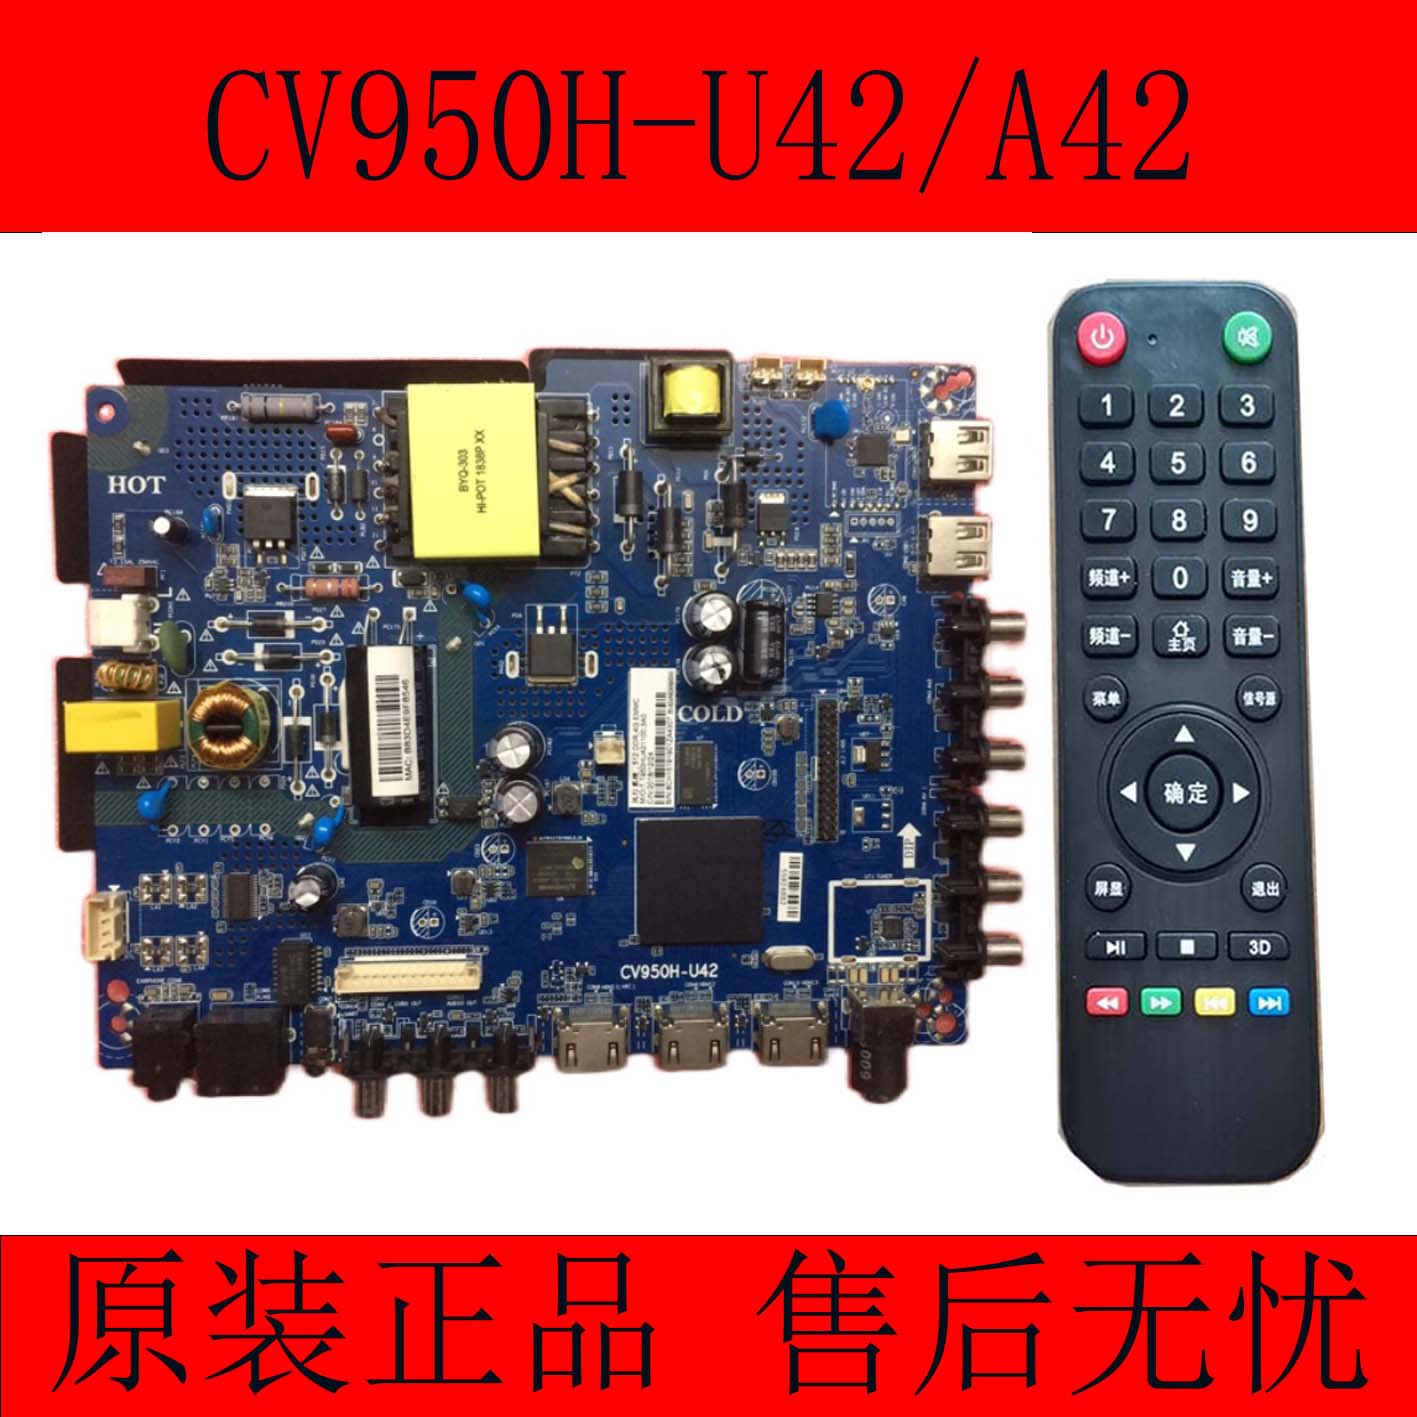 全新原装CV950H-A42  CV950H-U42 四核安卓智能WiFi液晶电视主板|ms